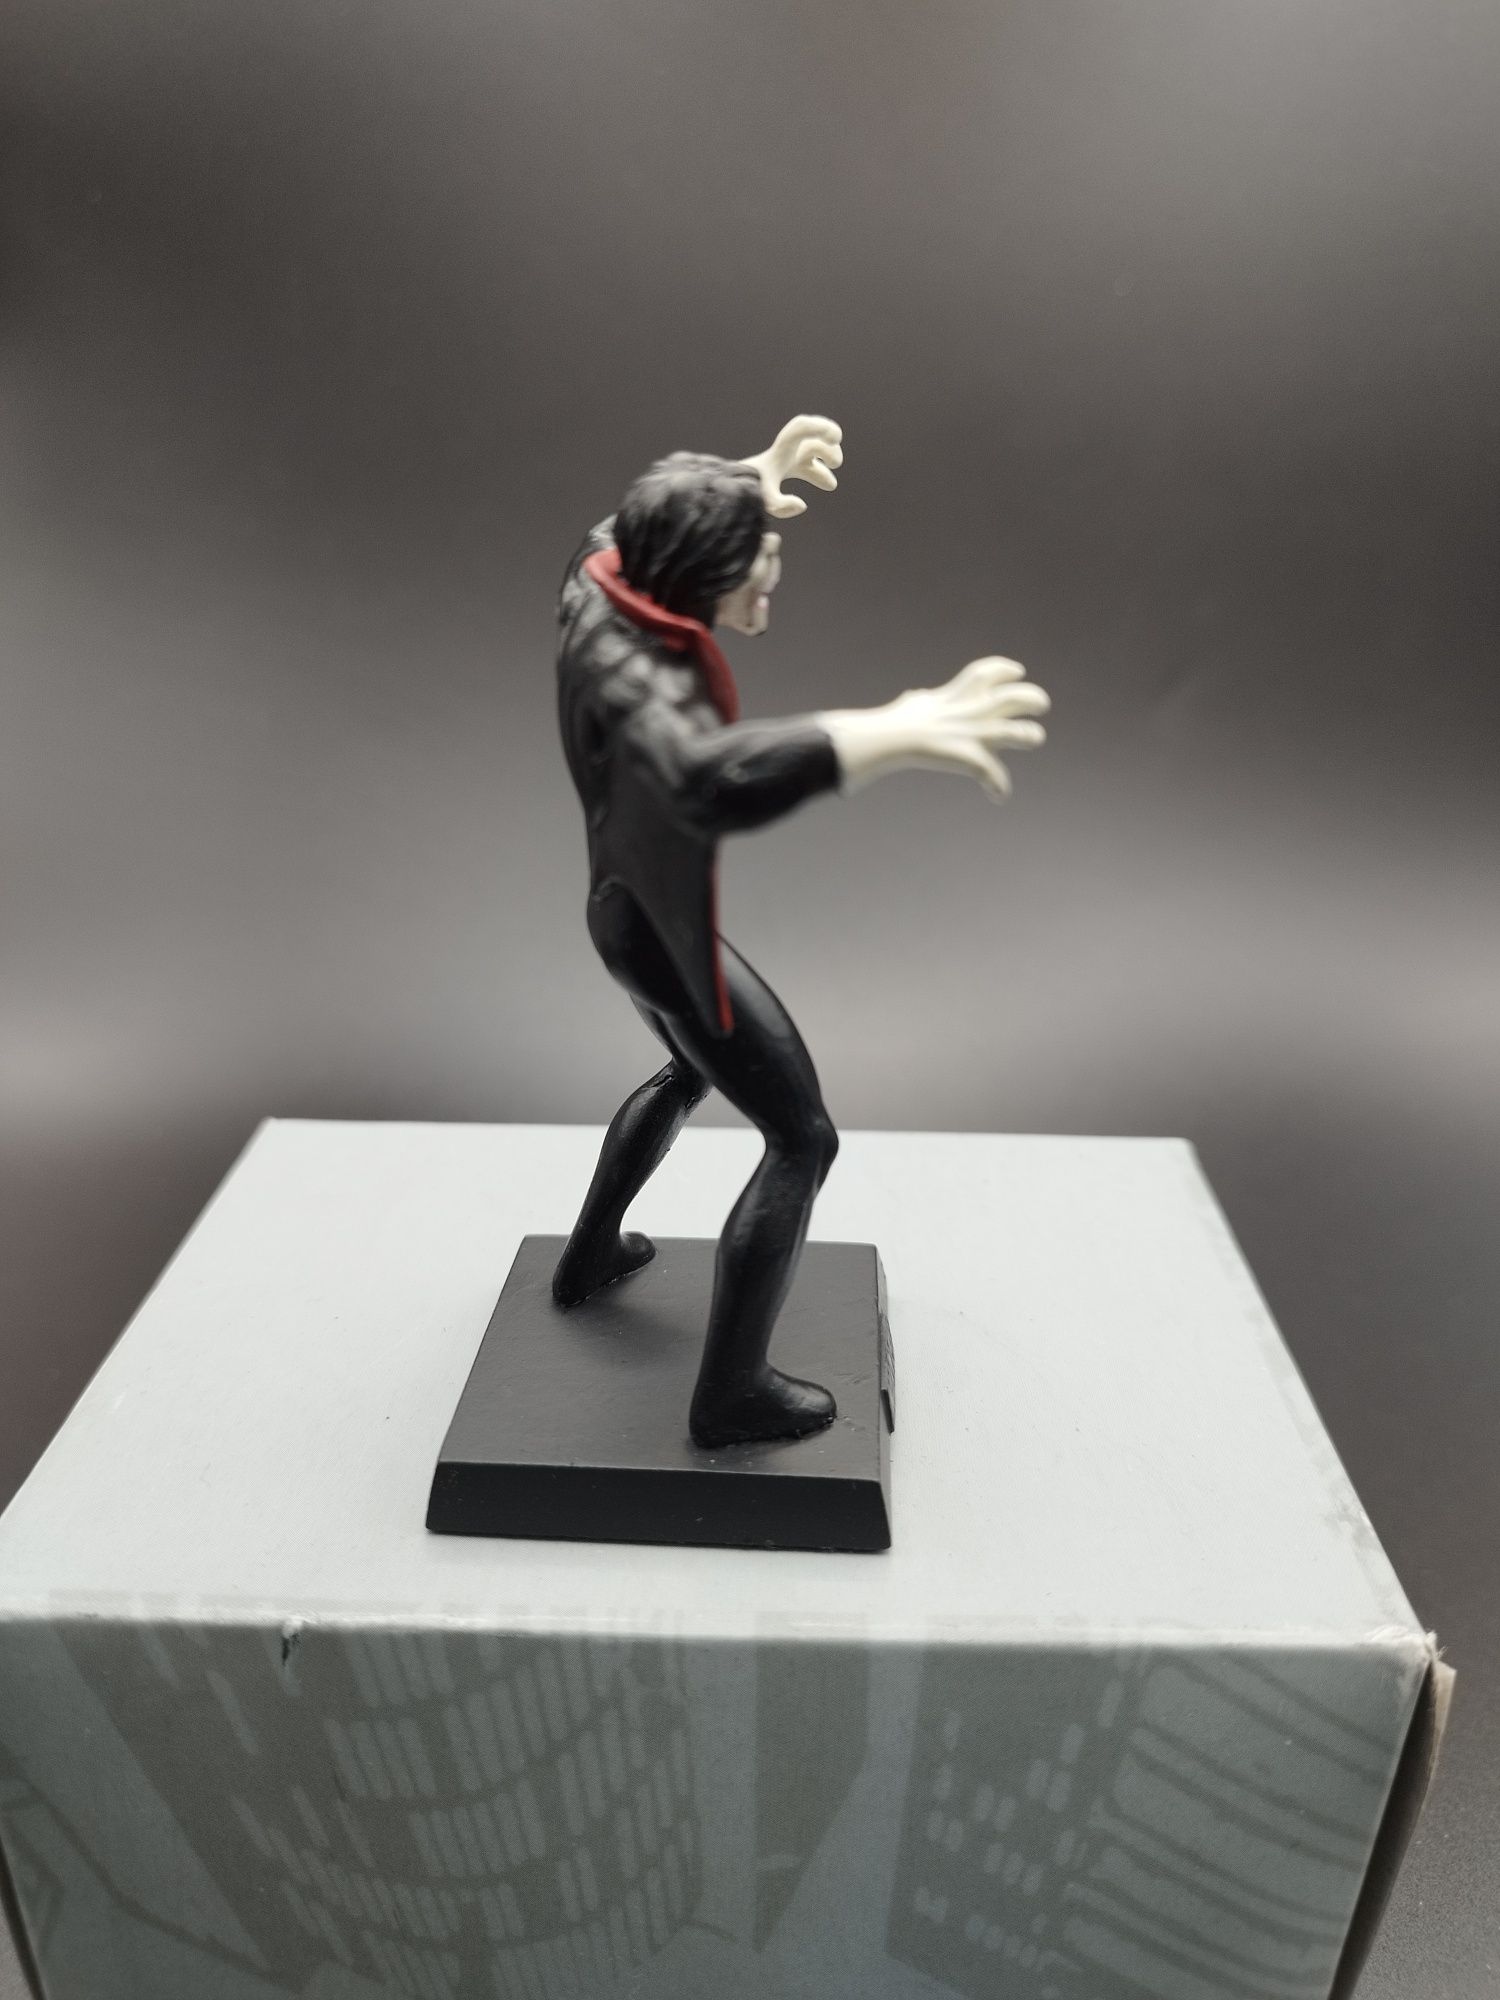 Figurka Marvel klasyczna Morbius #99  ok 8 cm ciężka ołowiana figurka